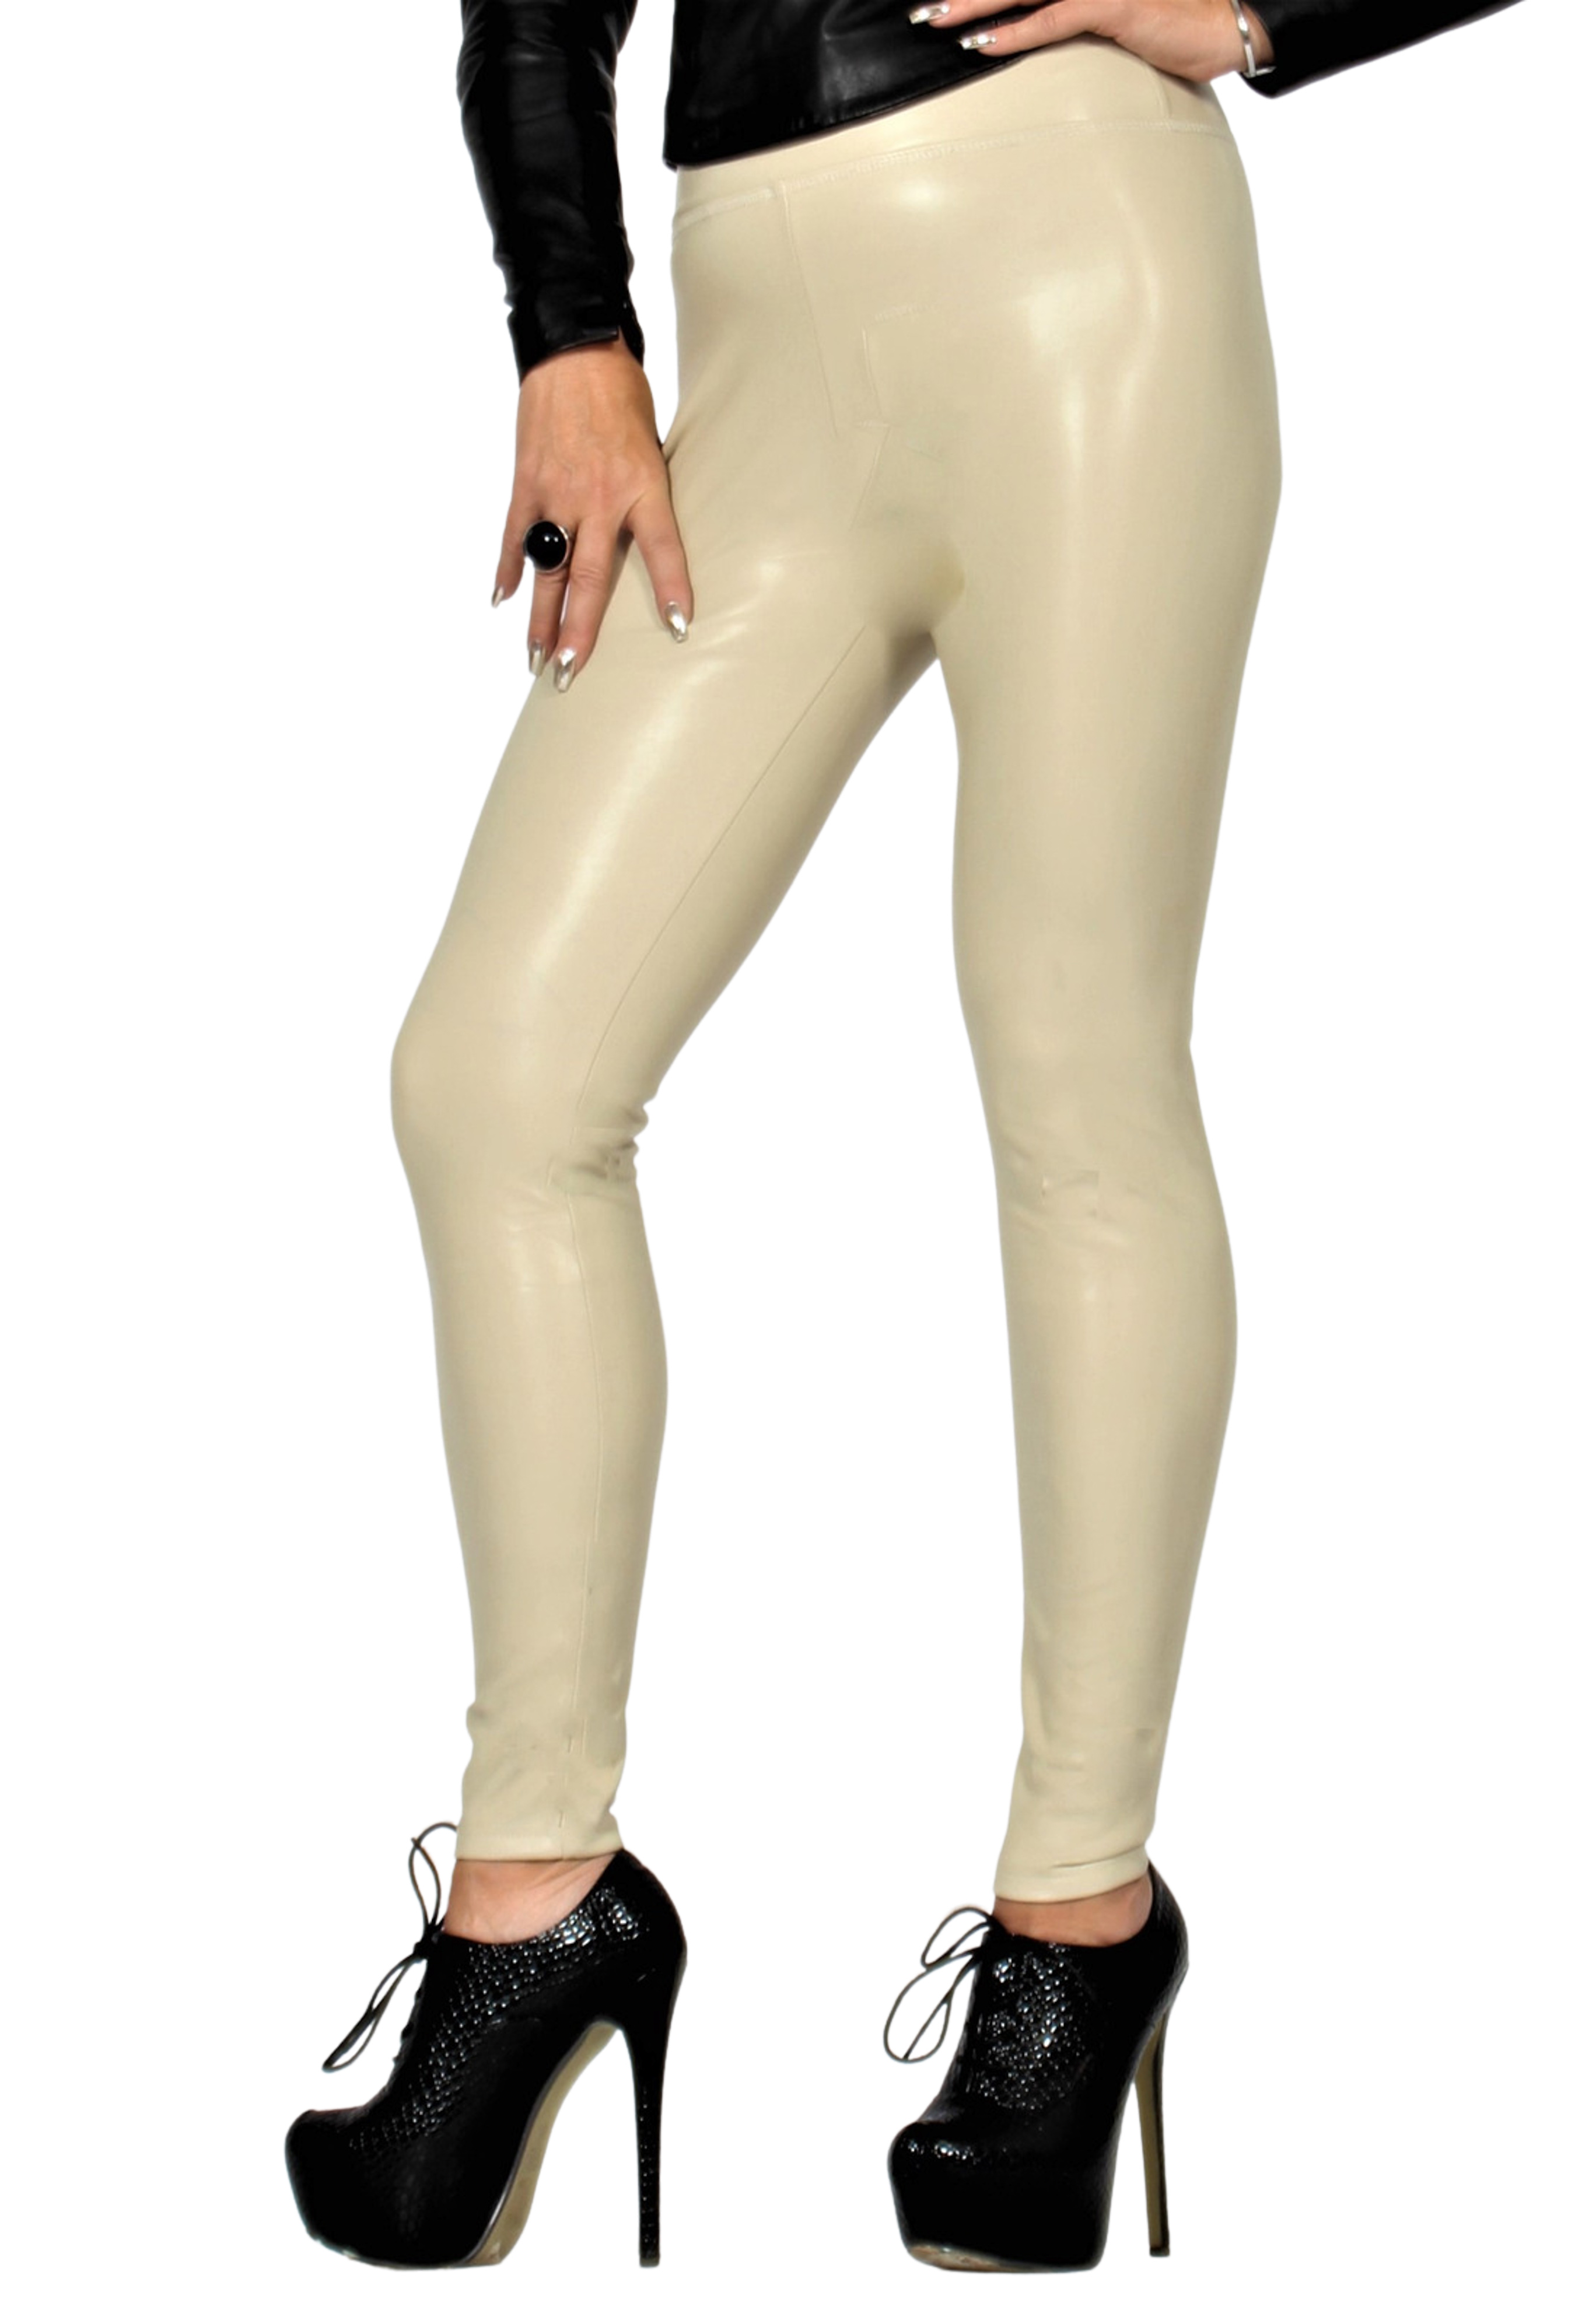 Pantaloni in pelle elasticizzata come leggings  a vita alta pelle beige